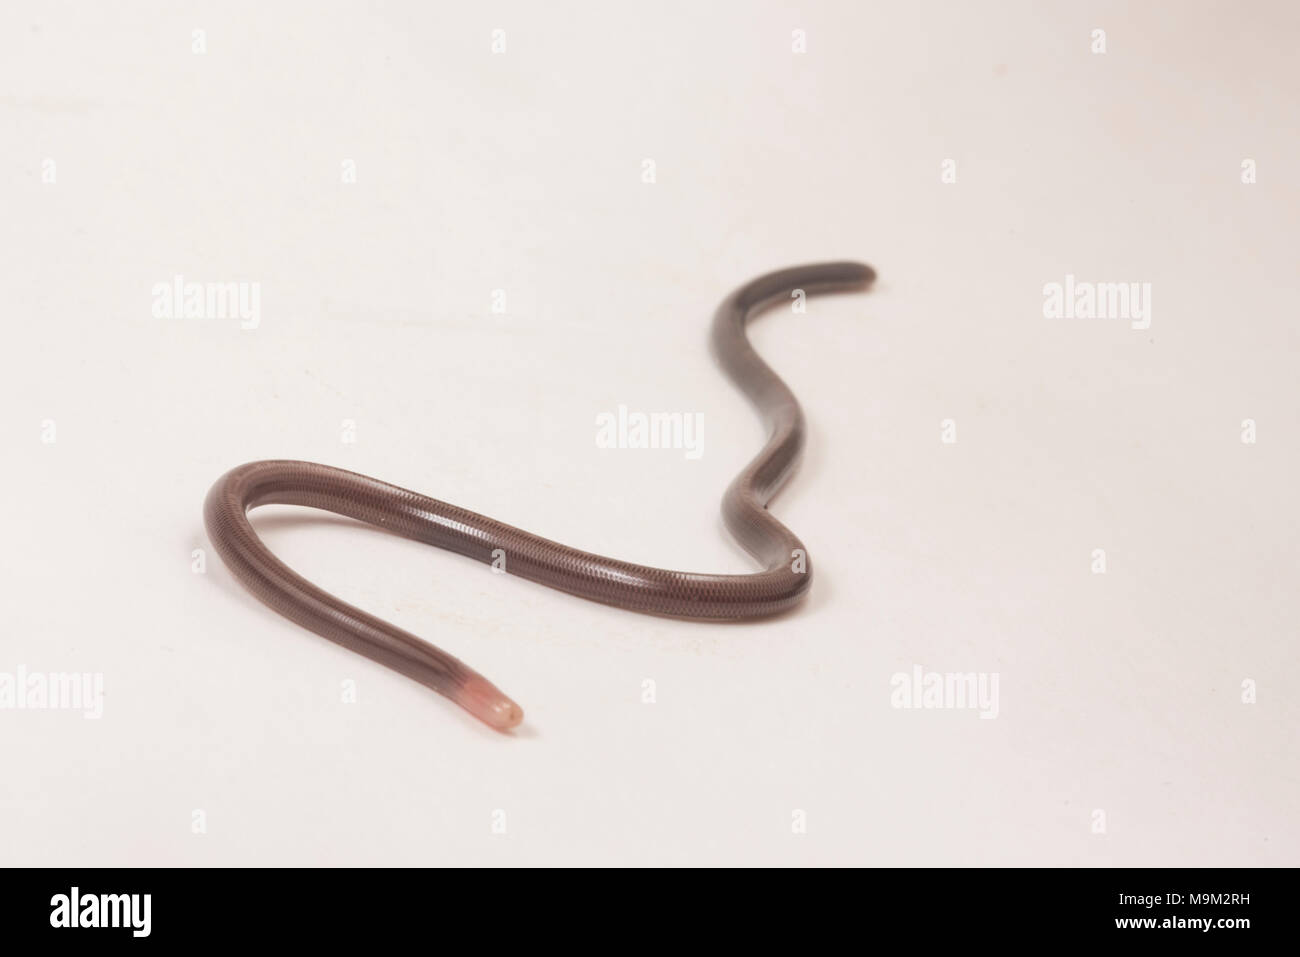 Un piccolo filo snake/serpente cieco dal Perù. Probabilmente nel genere Liotyphlops, questa specie probabilmente si nutre di piccole formiche e termiti. Foto Stock